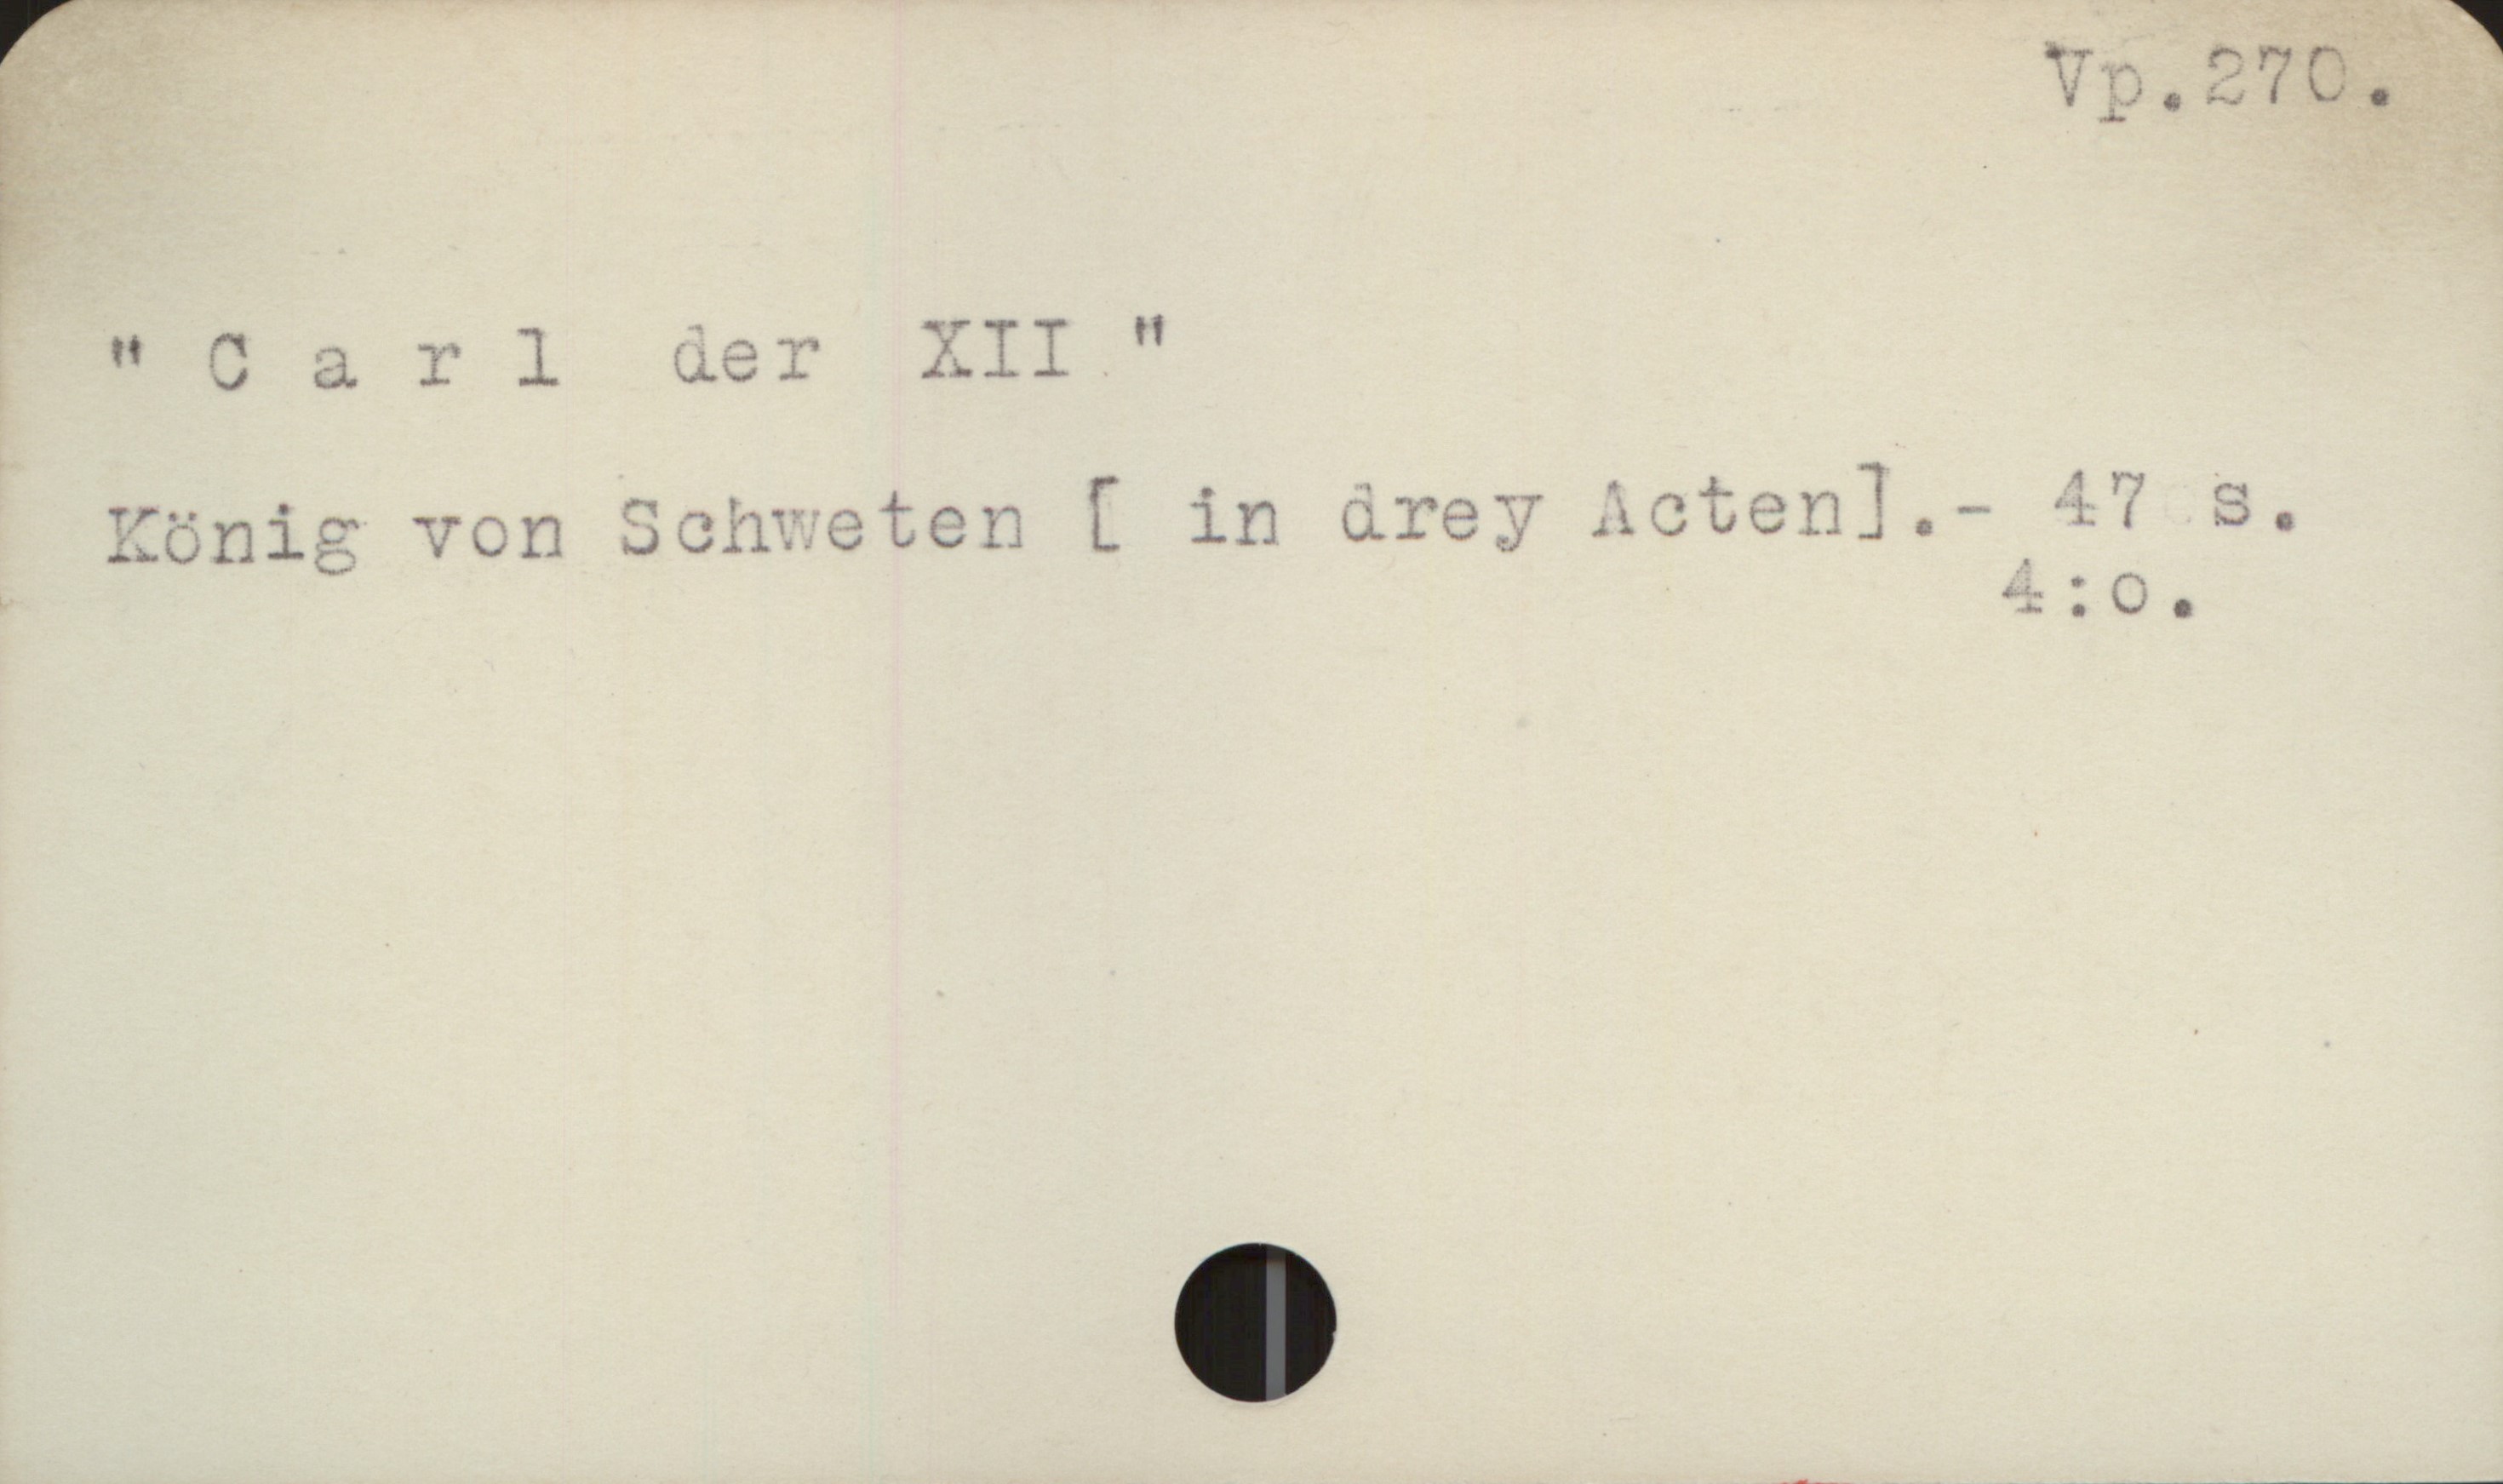 "Carl der XII" Vp.270.
"Carl der XII"
- König von Schweten [ in drey Acten].- 47 s.
4:0.